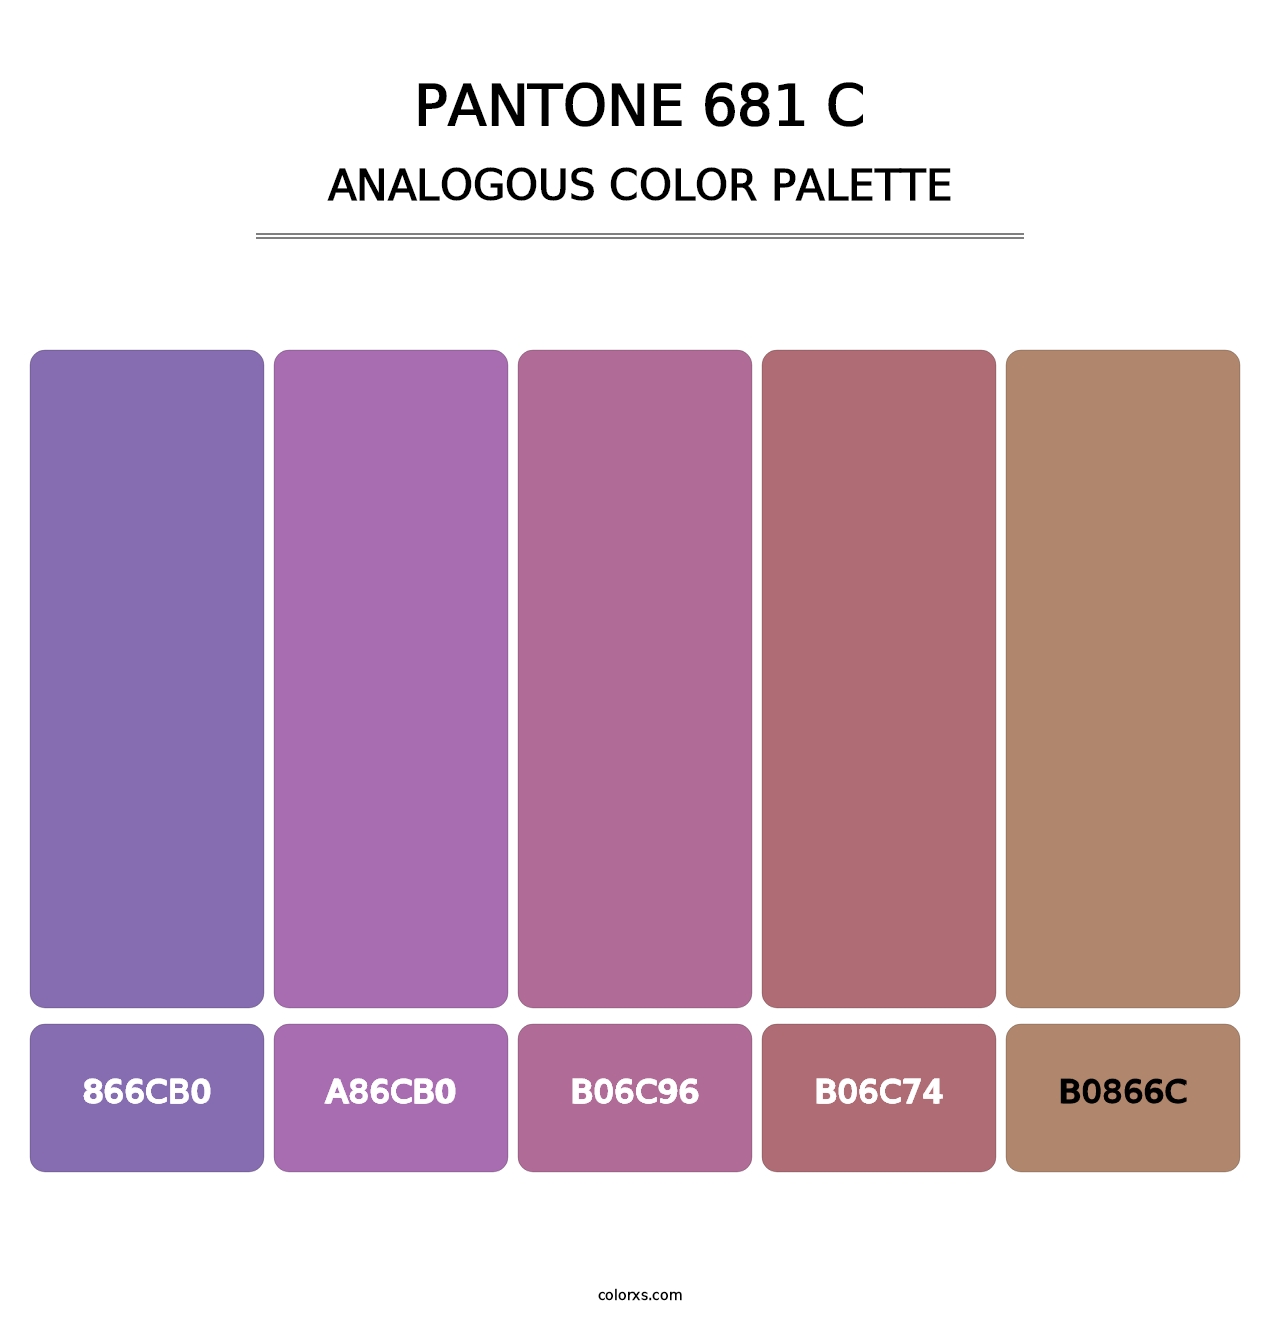 PANTONE 681 C - Analogous Color Palette